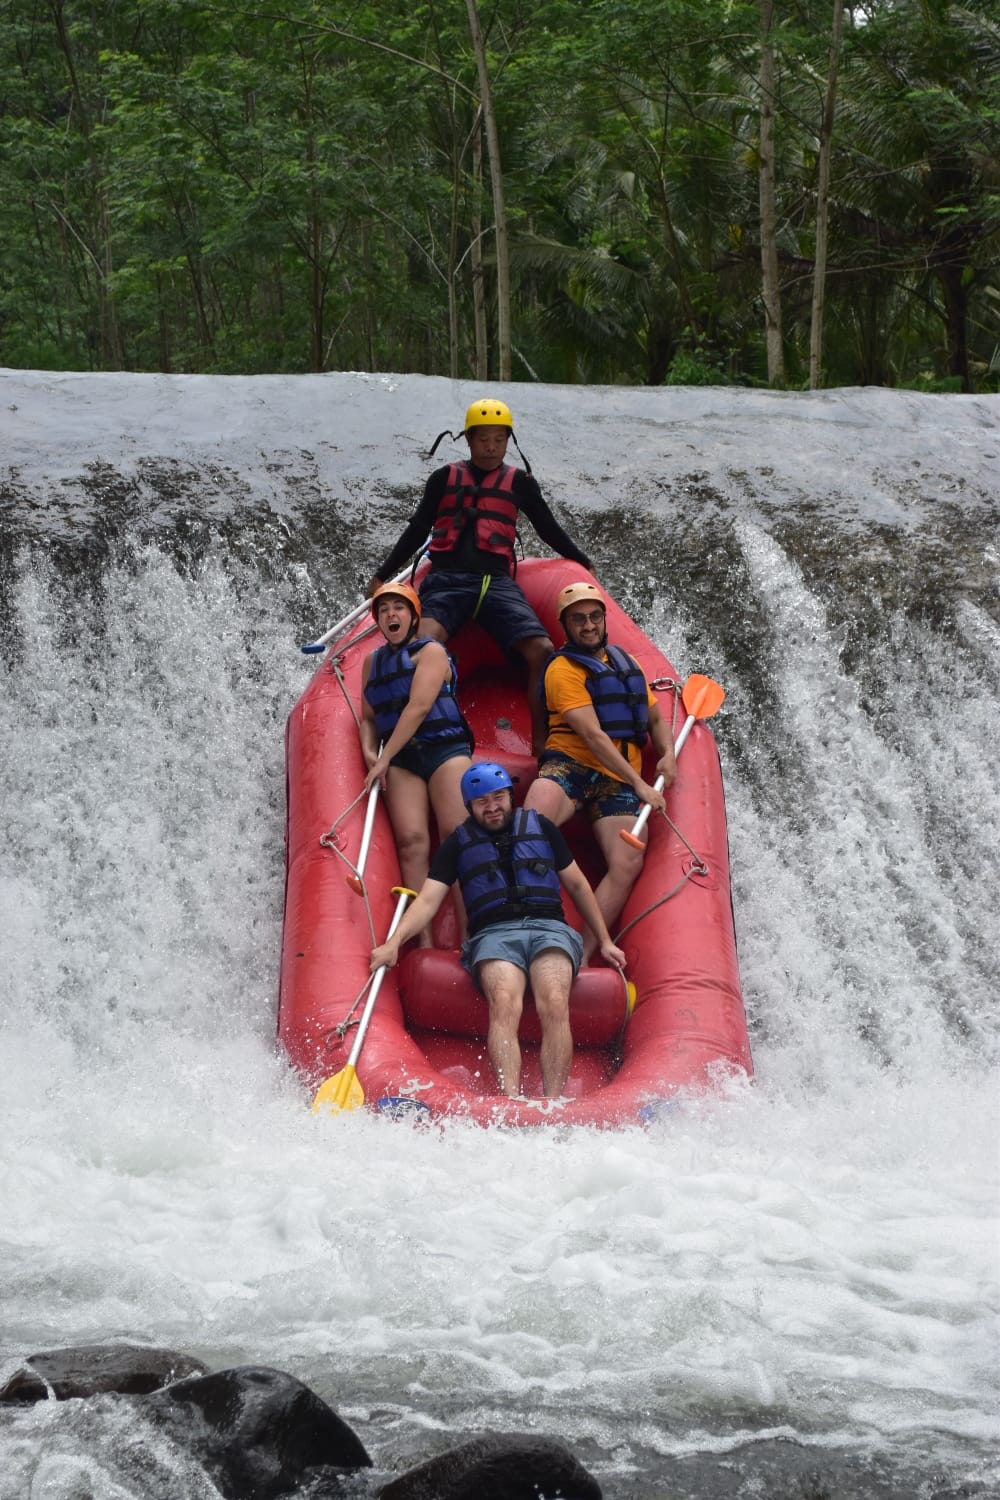 Telaga Waja River Rafting